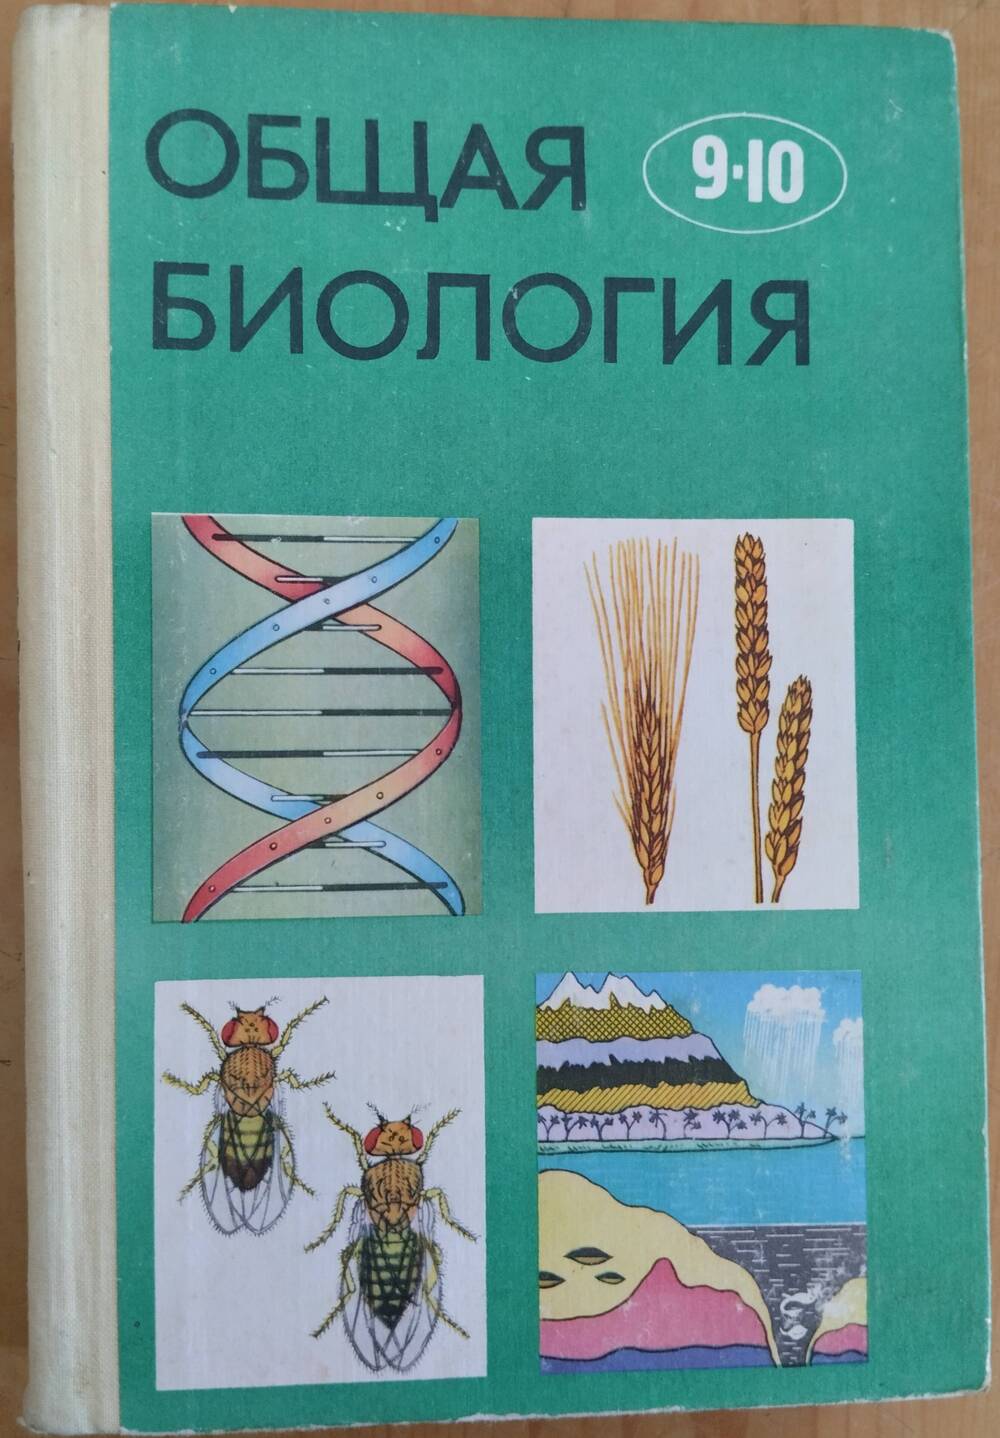 Общая биология для 9-10 классов, 304 стр.